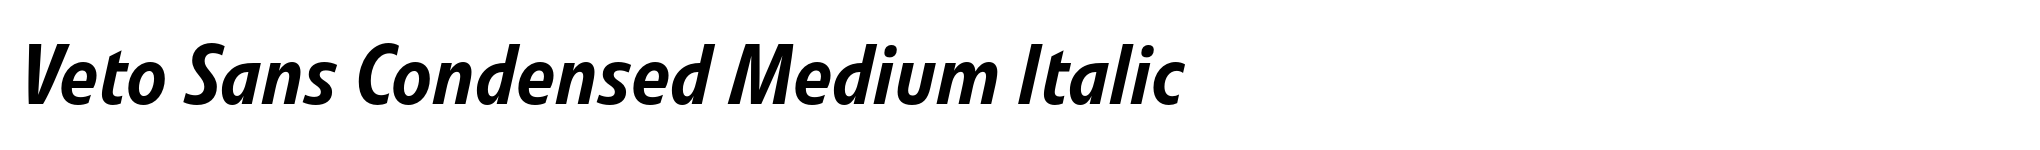 Veto Sans Condensed Medium Italic image